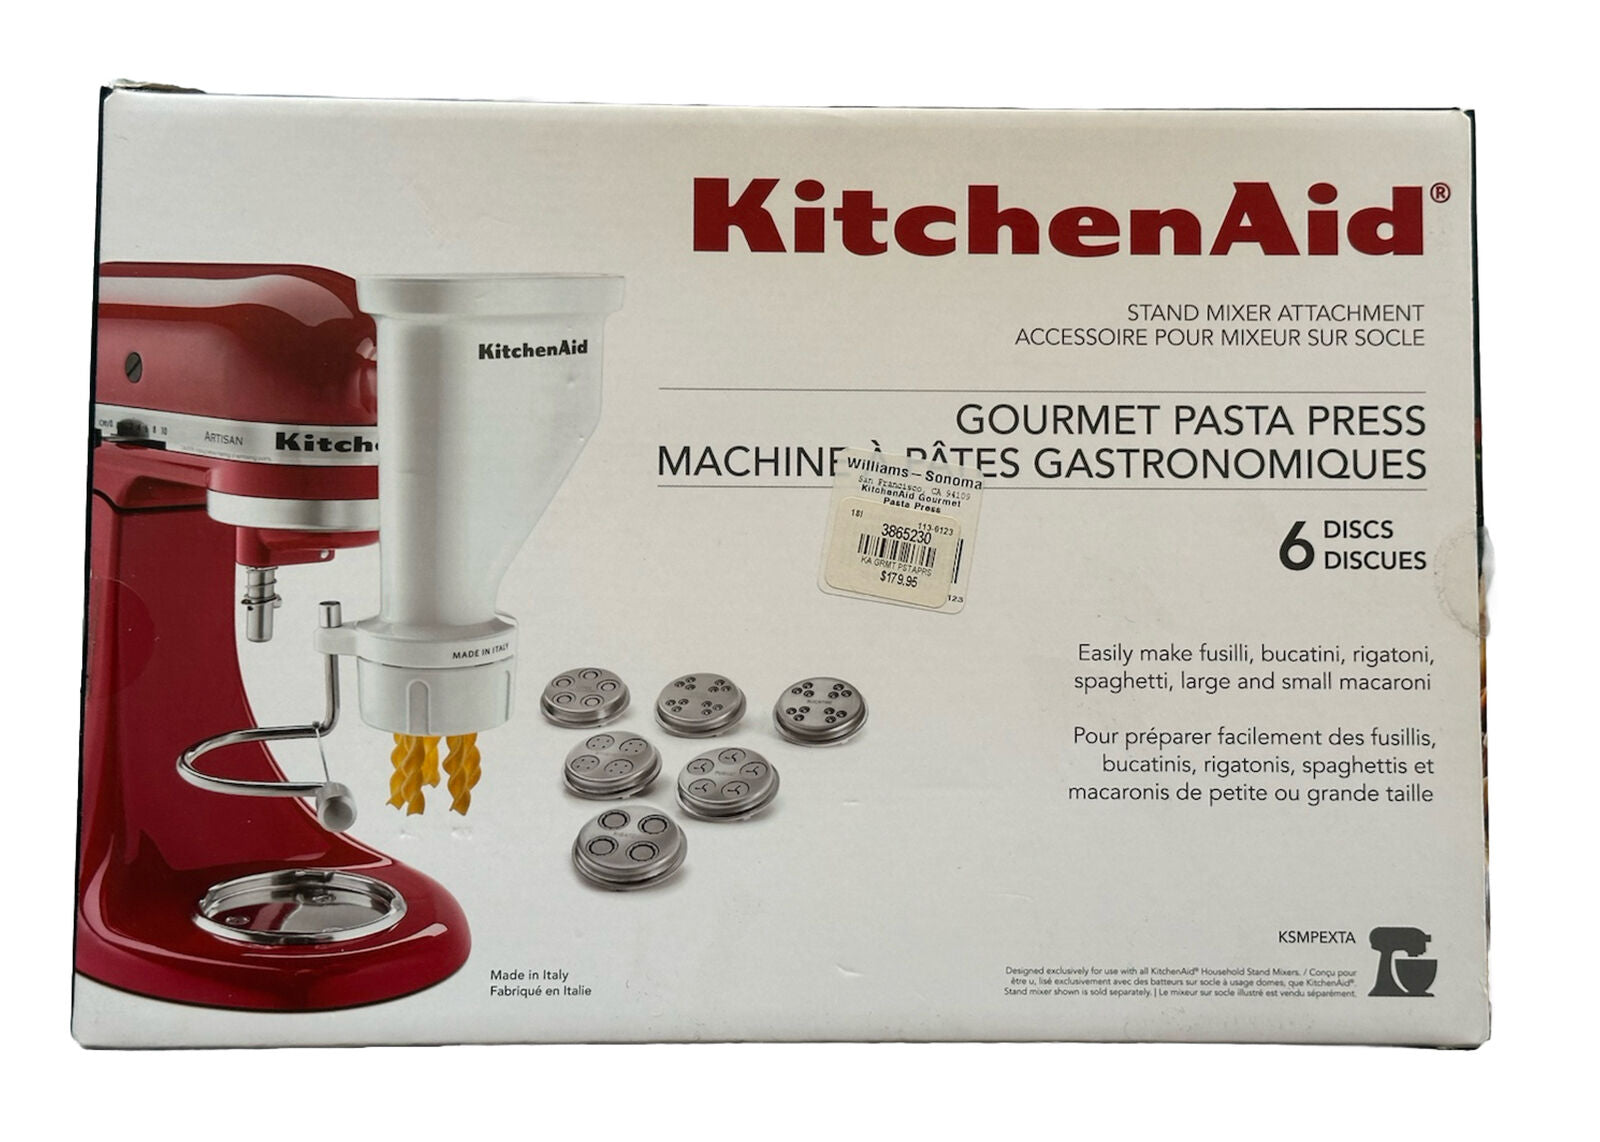 Neuer KitchenAid Gourmet Nudelpresse-Standmixer-Aufsatz KSMPEXTA, hergestellt in Italien